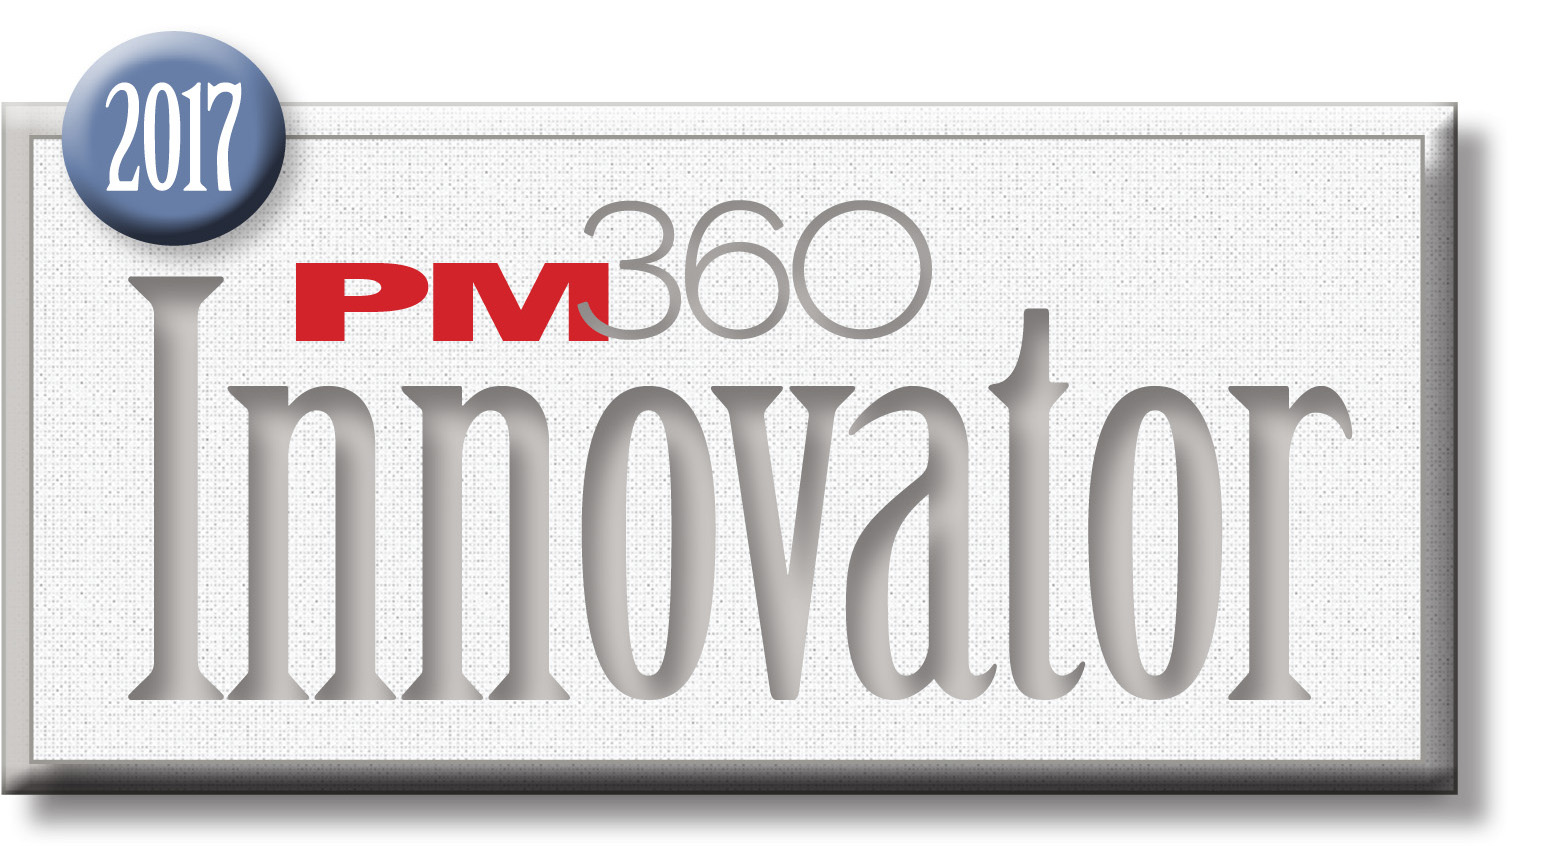 2017 innovation logo